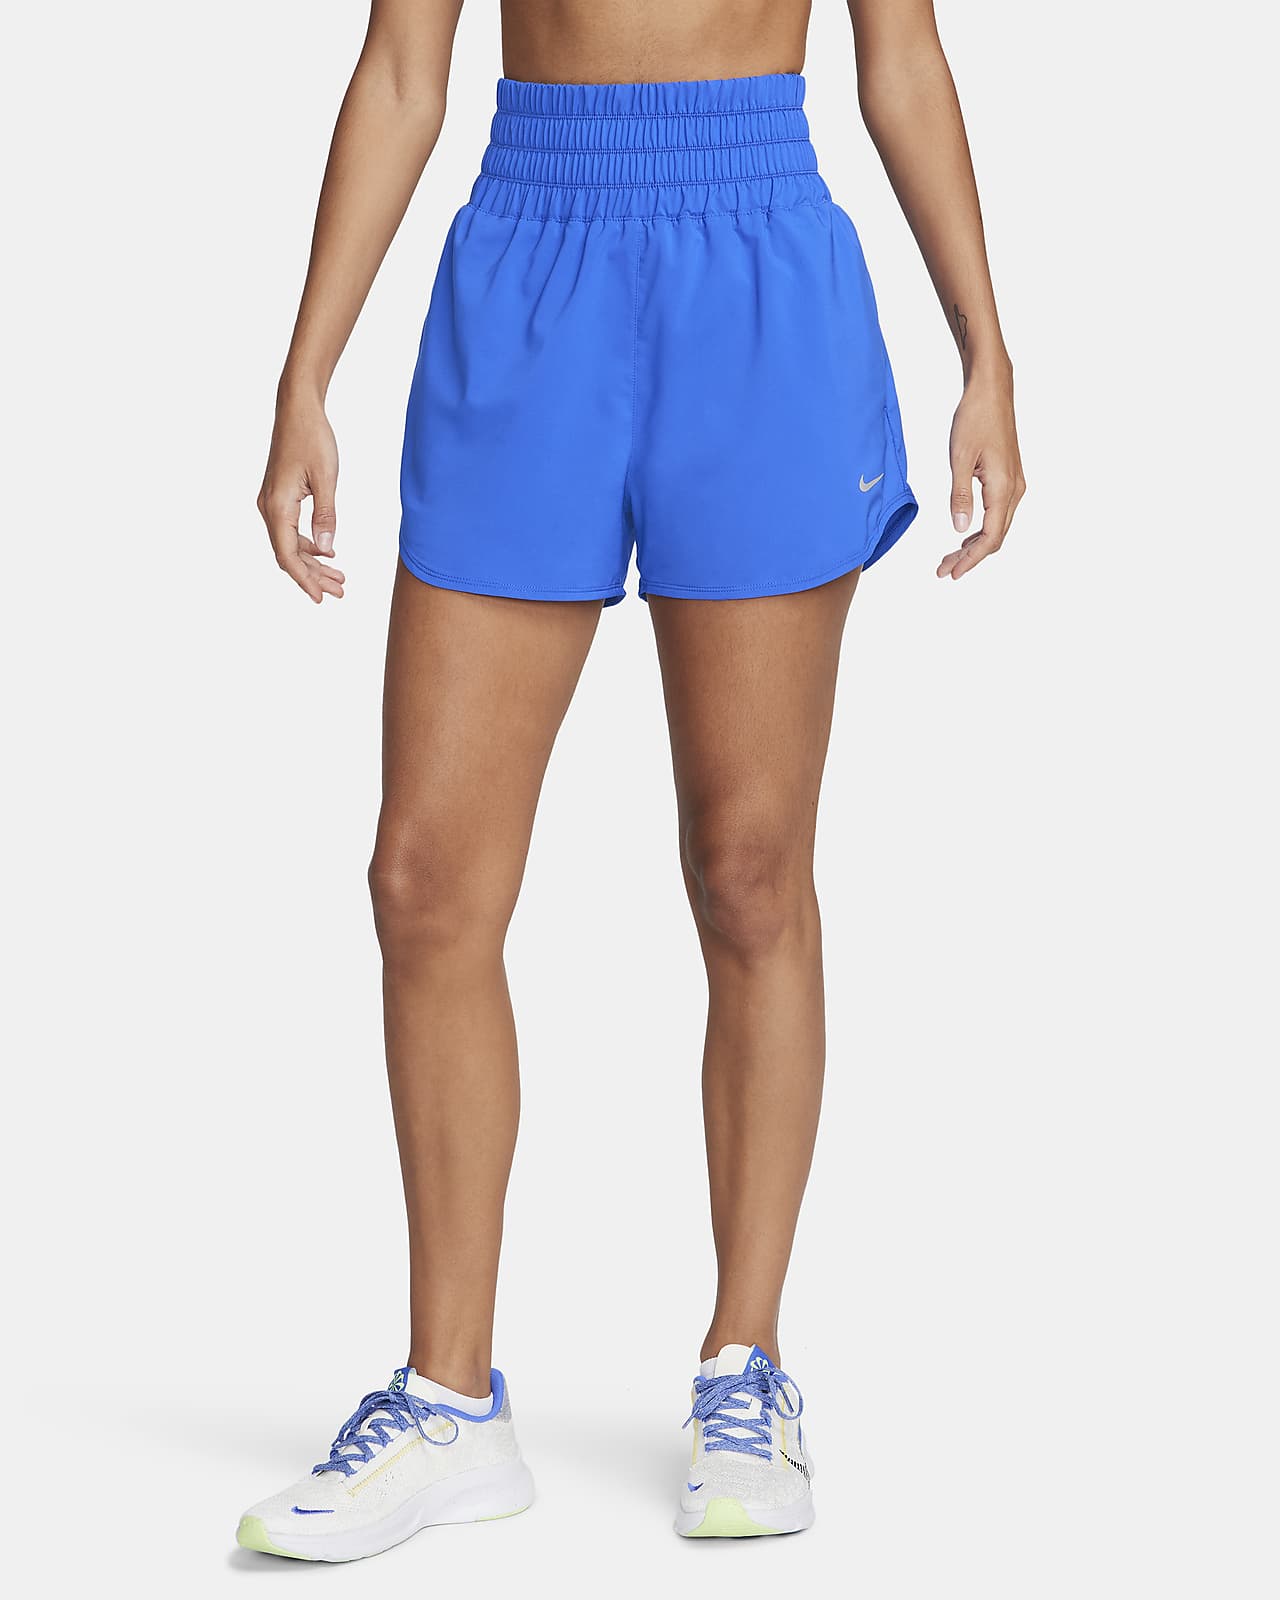 Short taille ultra-haute avec sous-short intégré 8 cm Dri-FIT Nike One pour femme